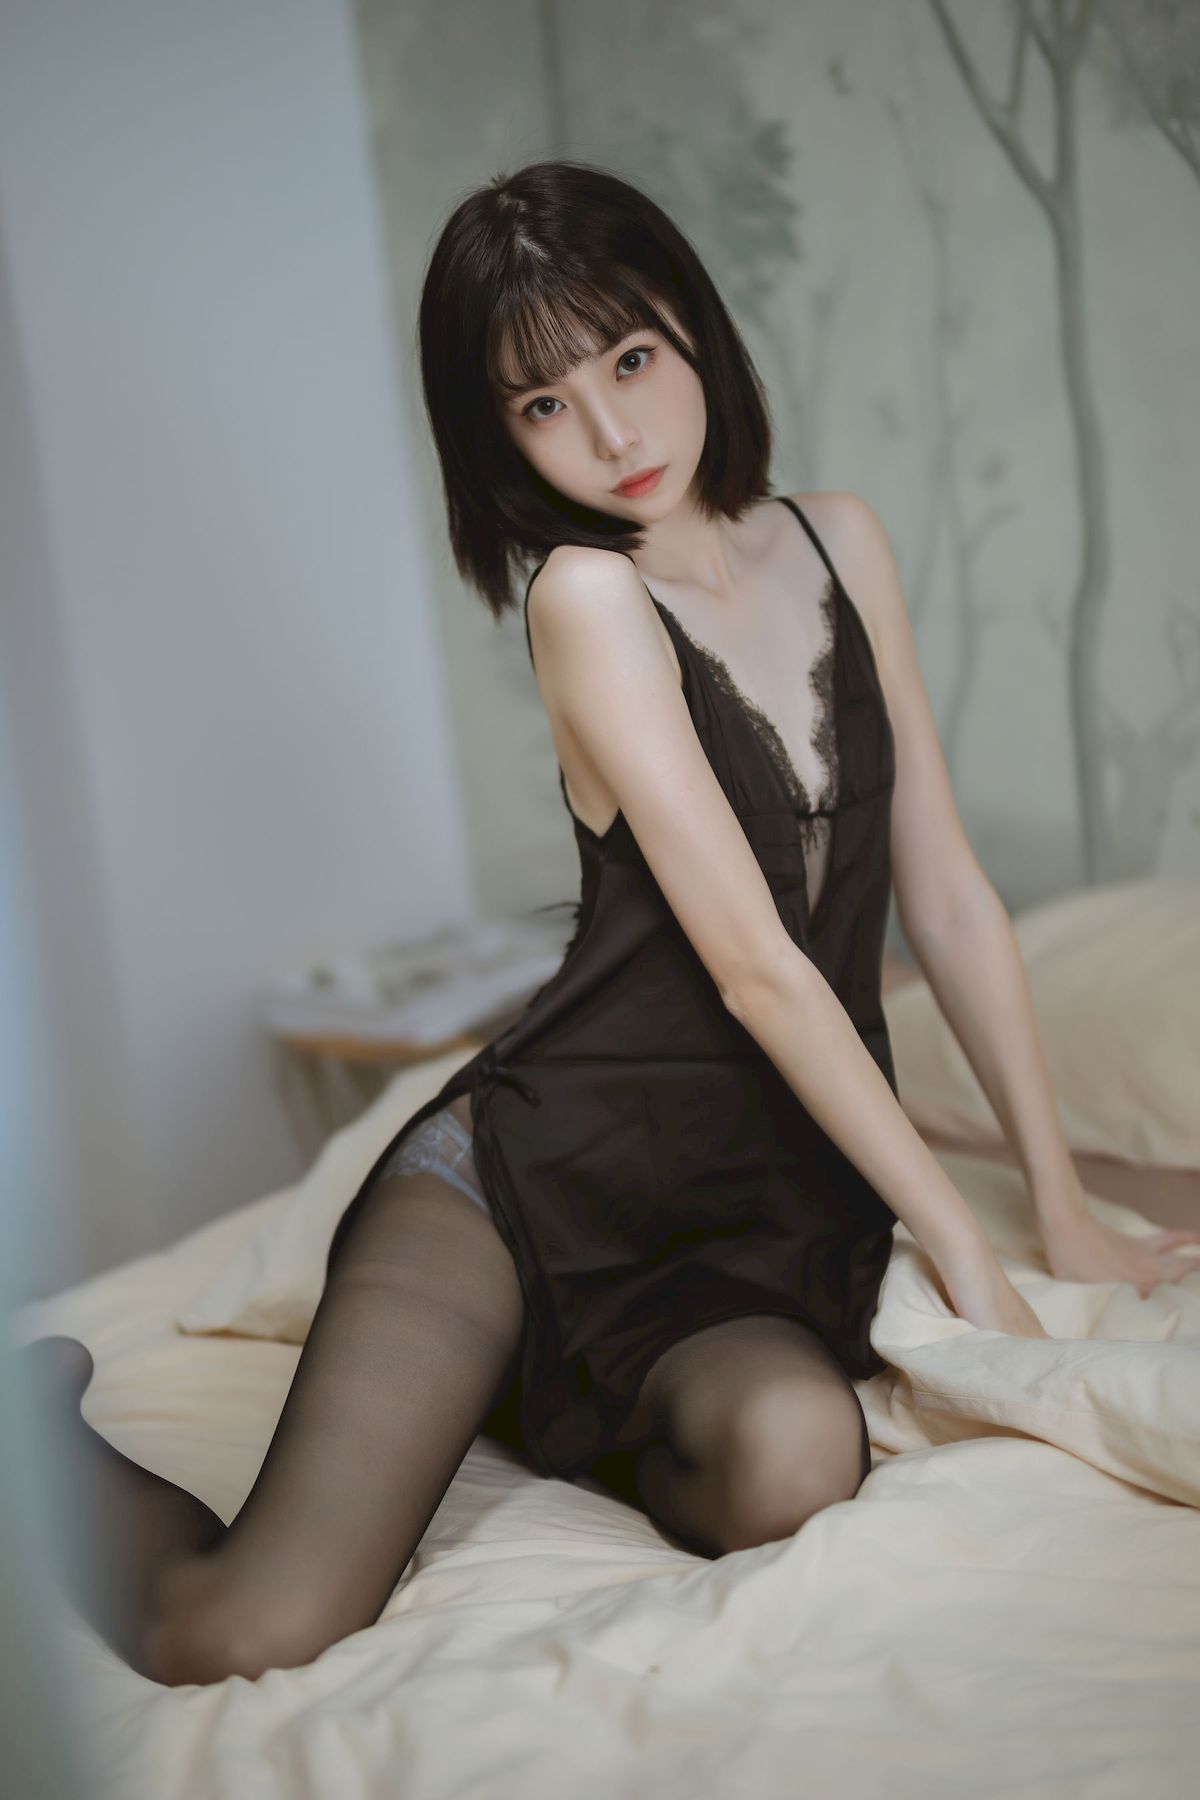 许岚LAN黑色蕾丝睡衣搭配黑丝美腿福利写真